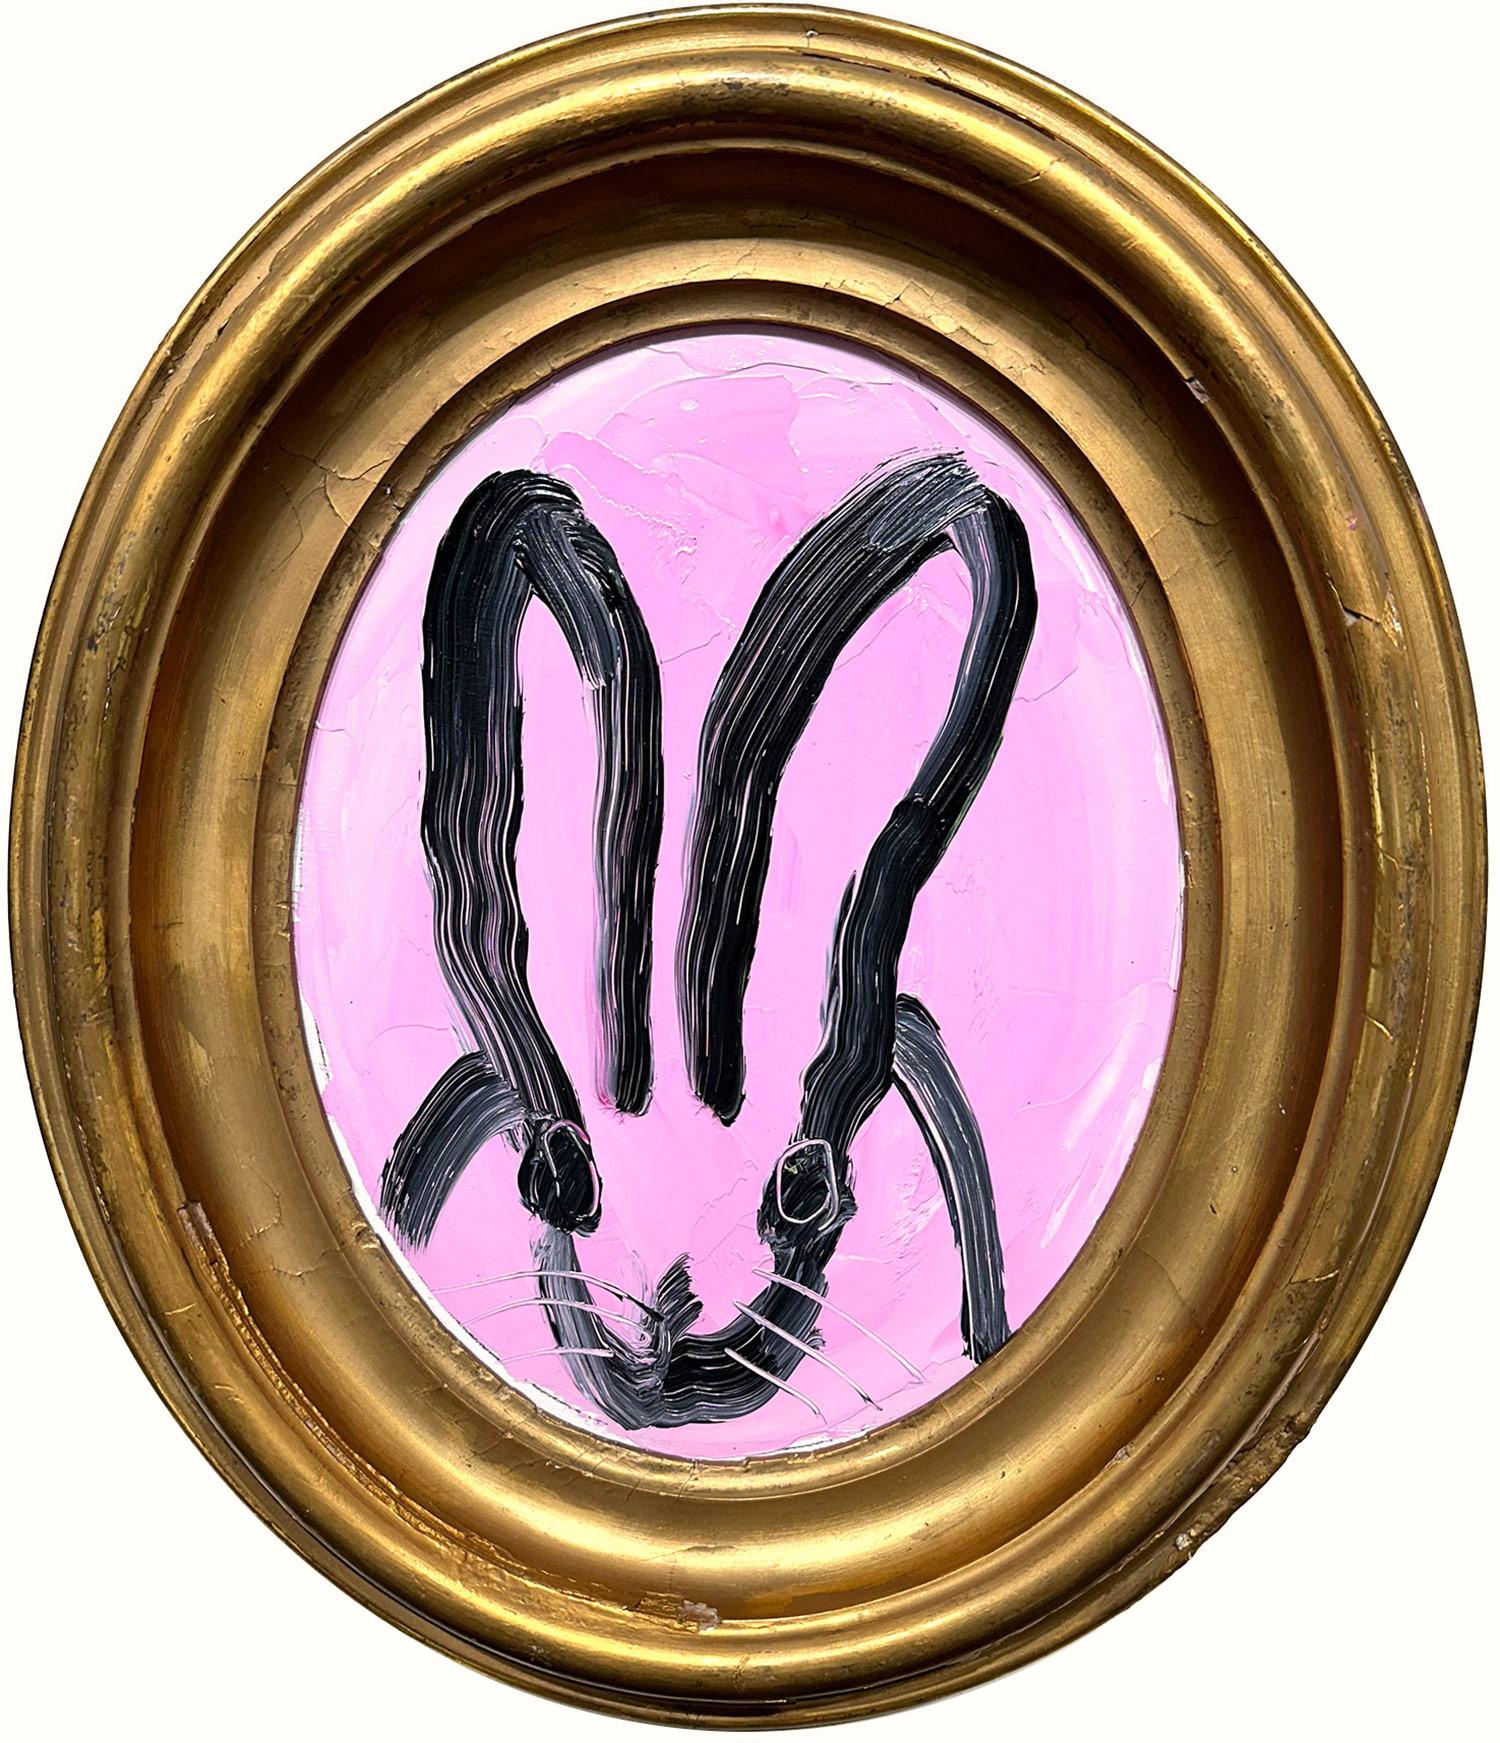 Hunt Slonem Abstract Painting – „Maybe“ Schwarzer Hase auf hellem, lavendelfarbenem Hintergrund, Ölgemälde – Ovalrahmen